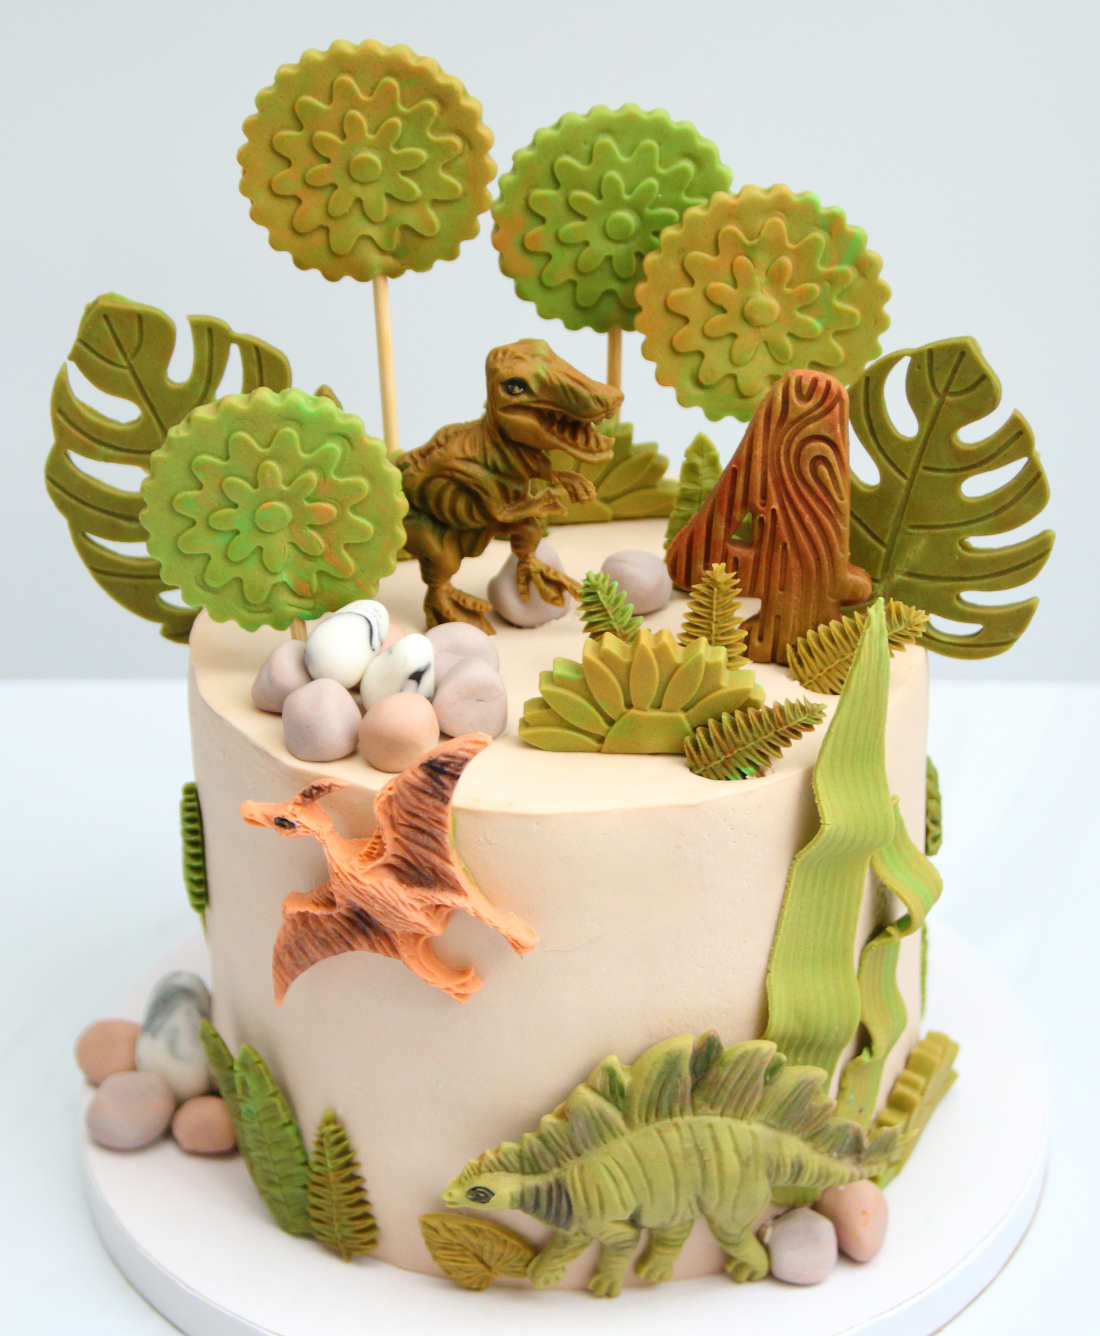 Фигуры динозавров на торте для дня рождения